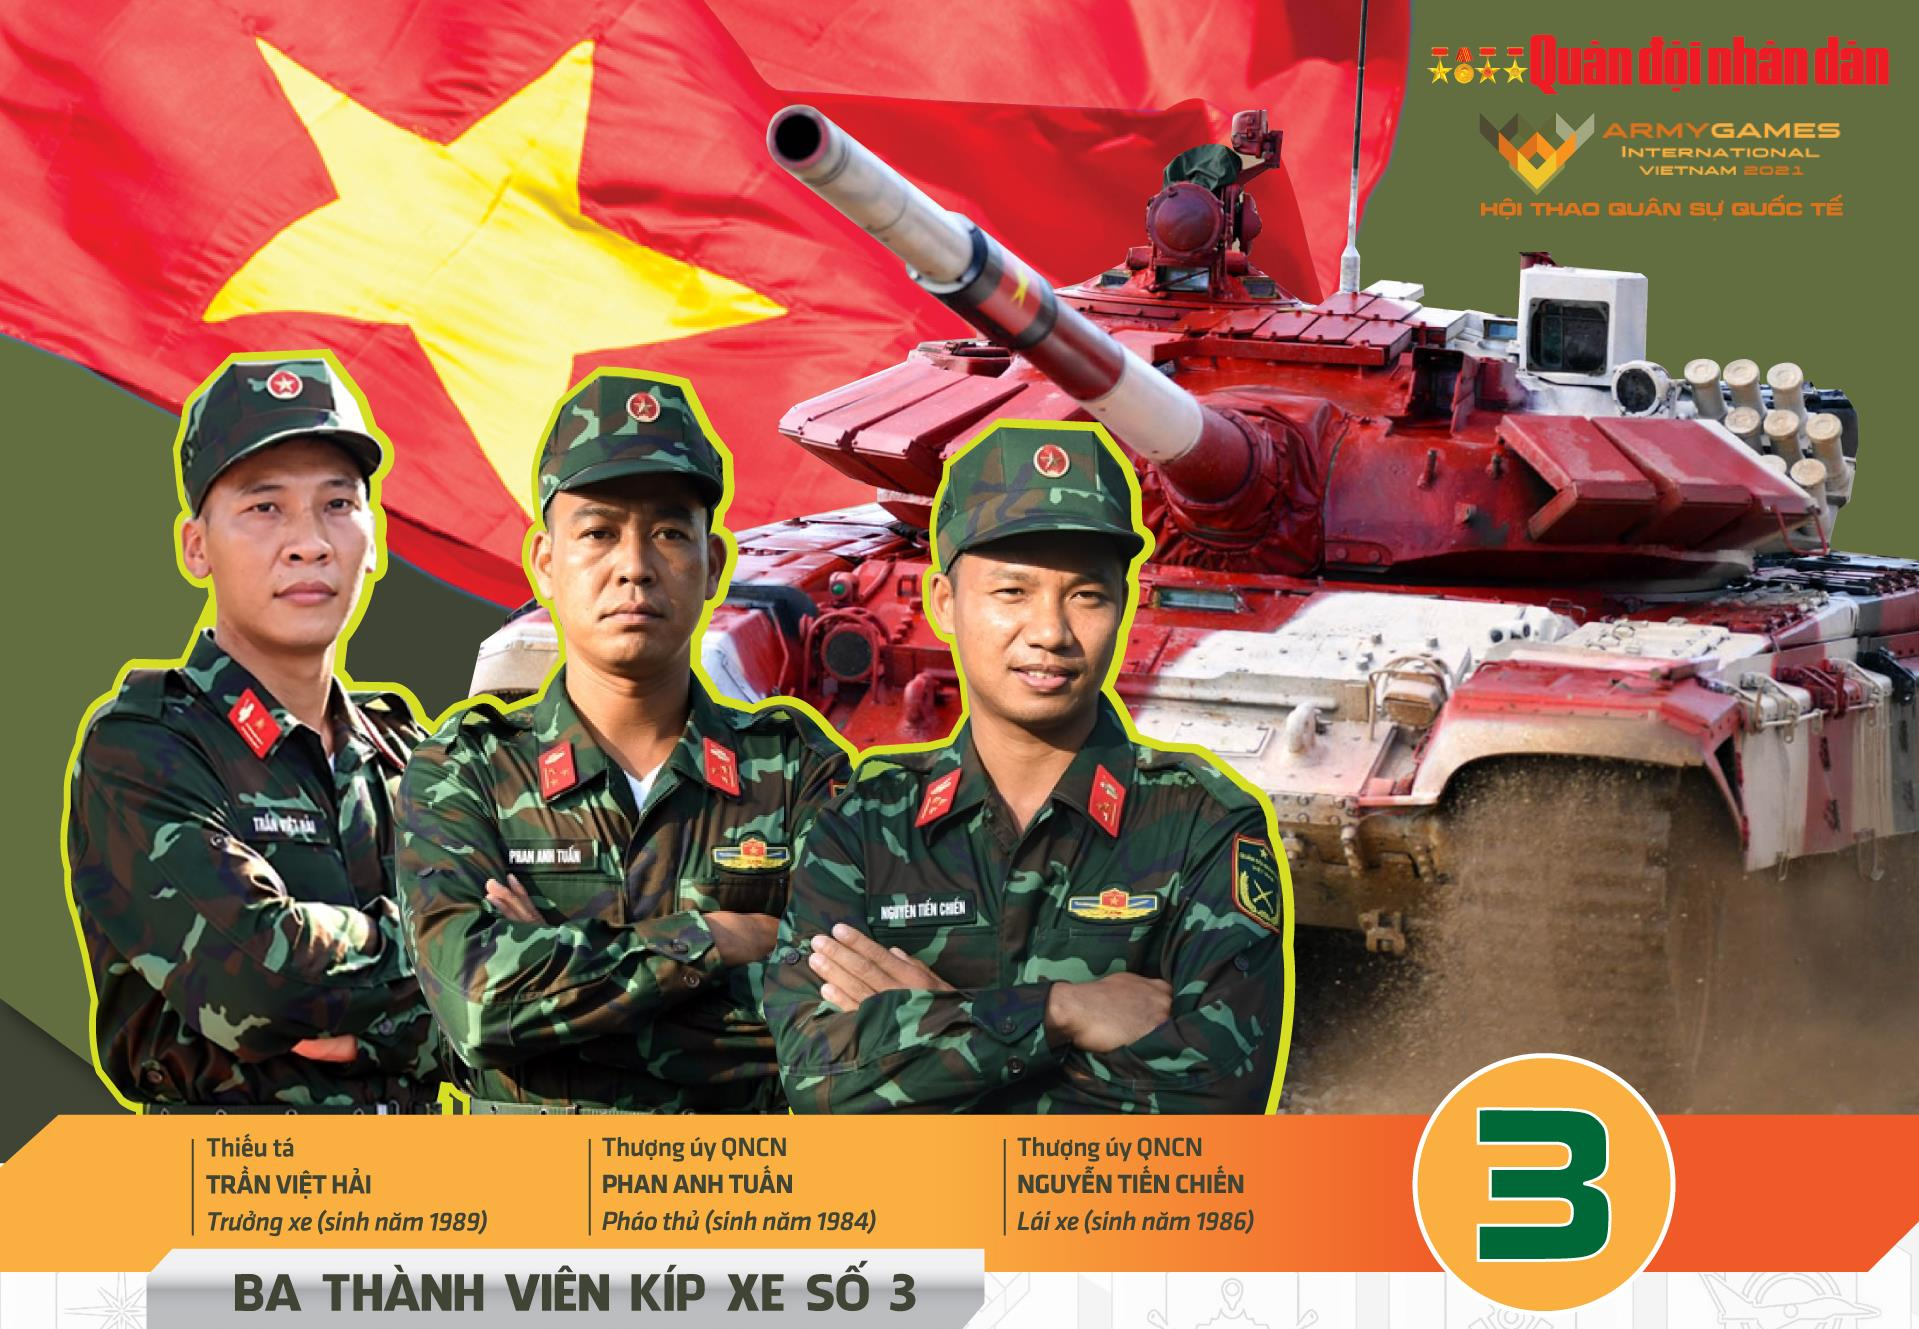 Kíp số 3 thi đấu xuất sắc, đội tuyển Việt Nam chứng tỏ bản lĩnh - 28